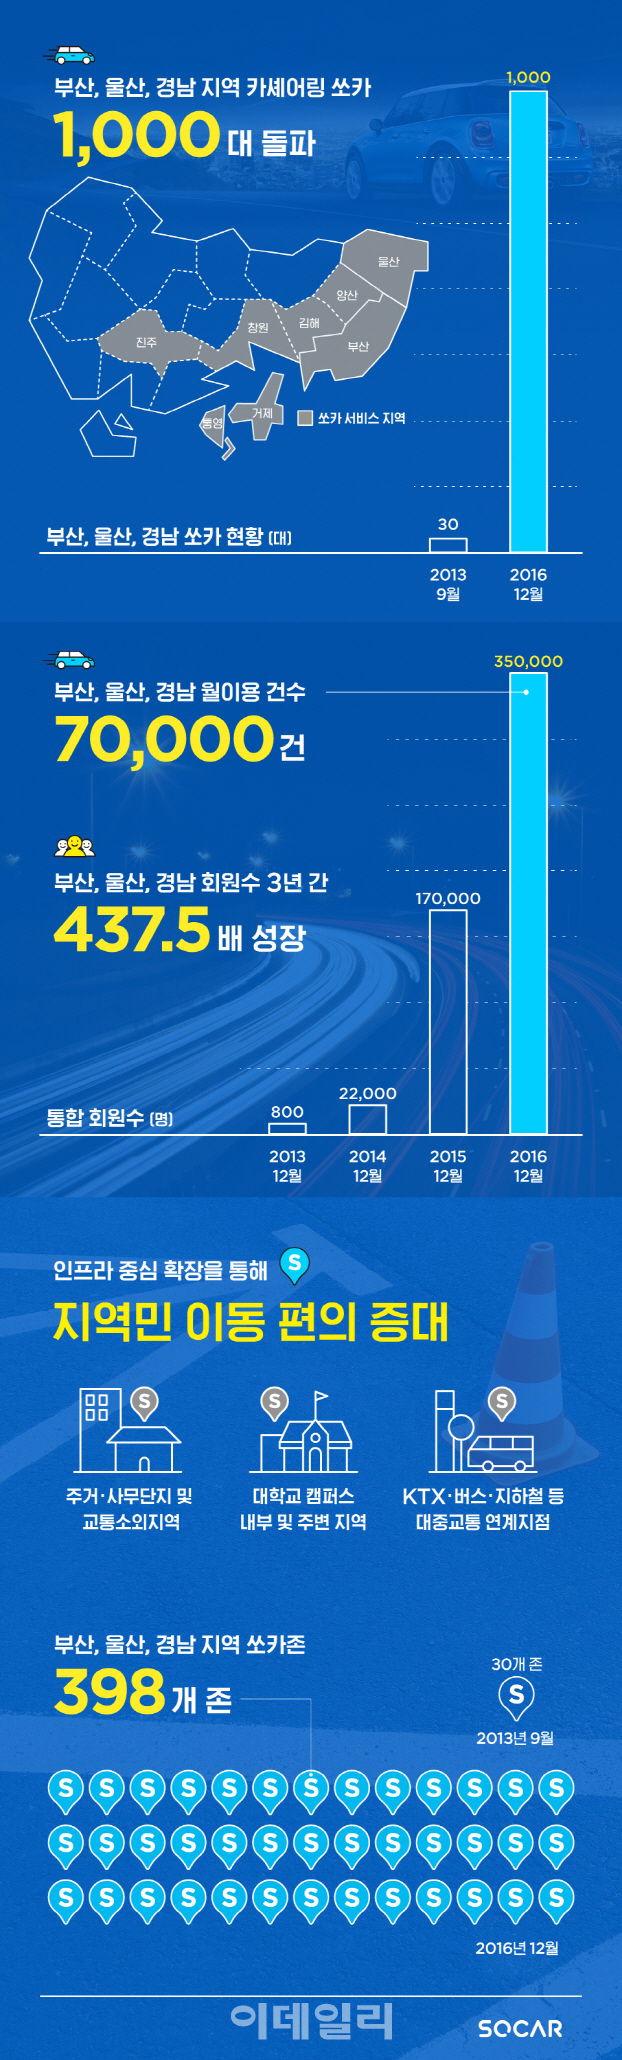 쏘카, 부산·울산·경남 공유차량 1000대 돌파…특별 할인